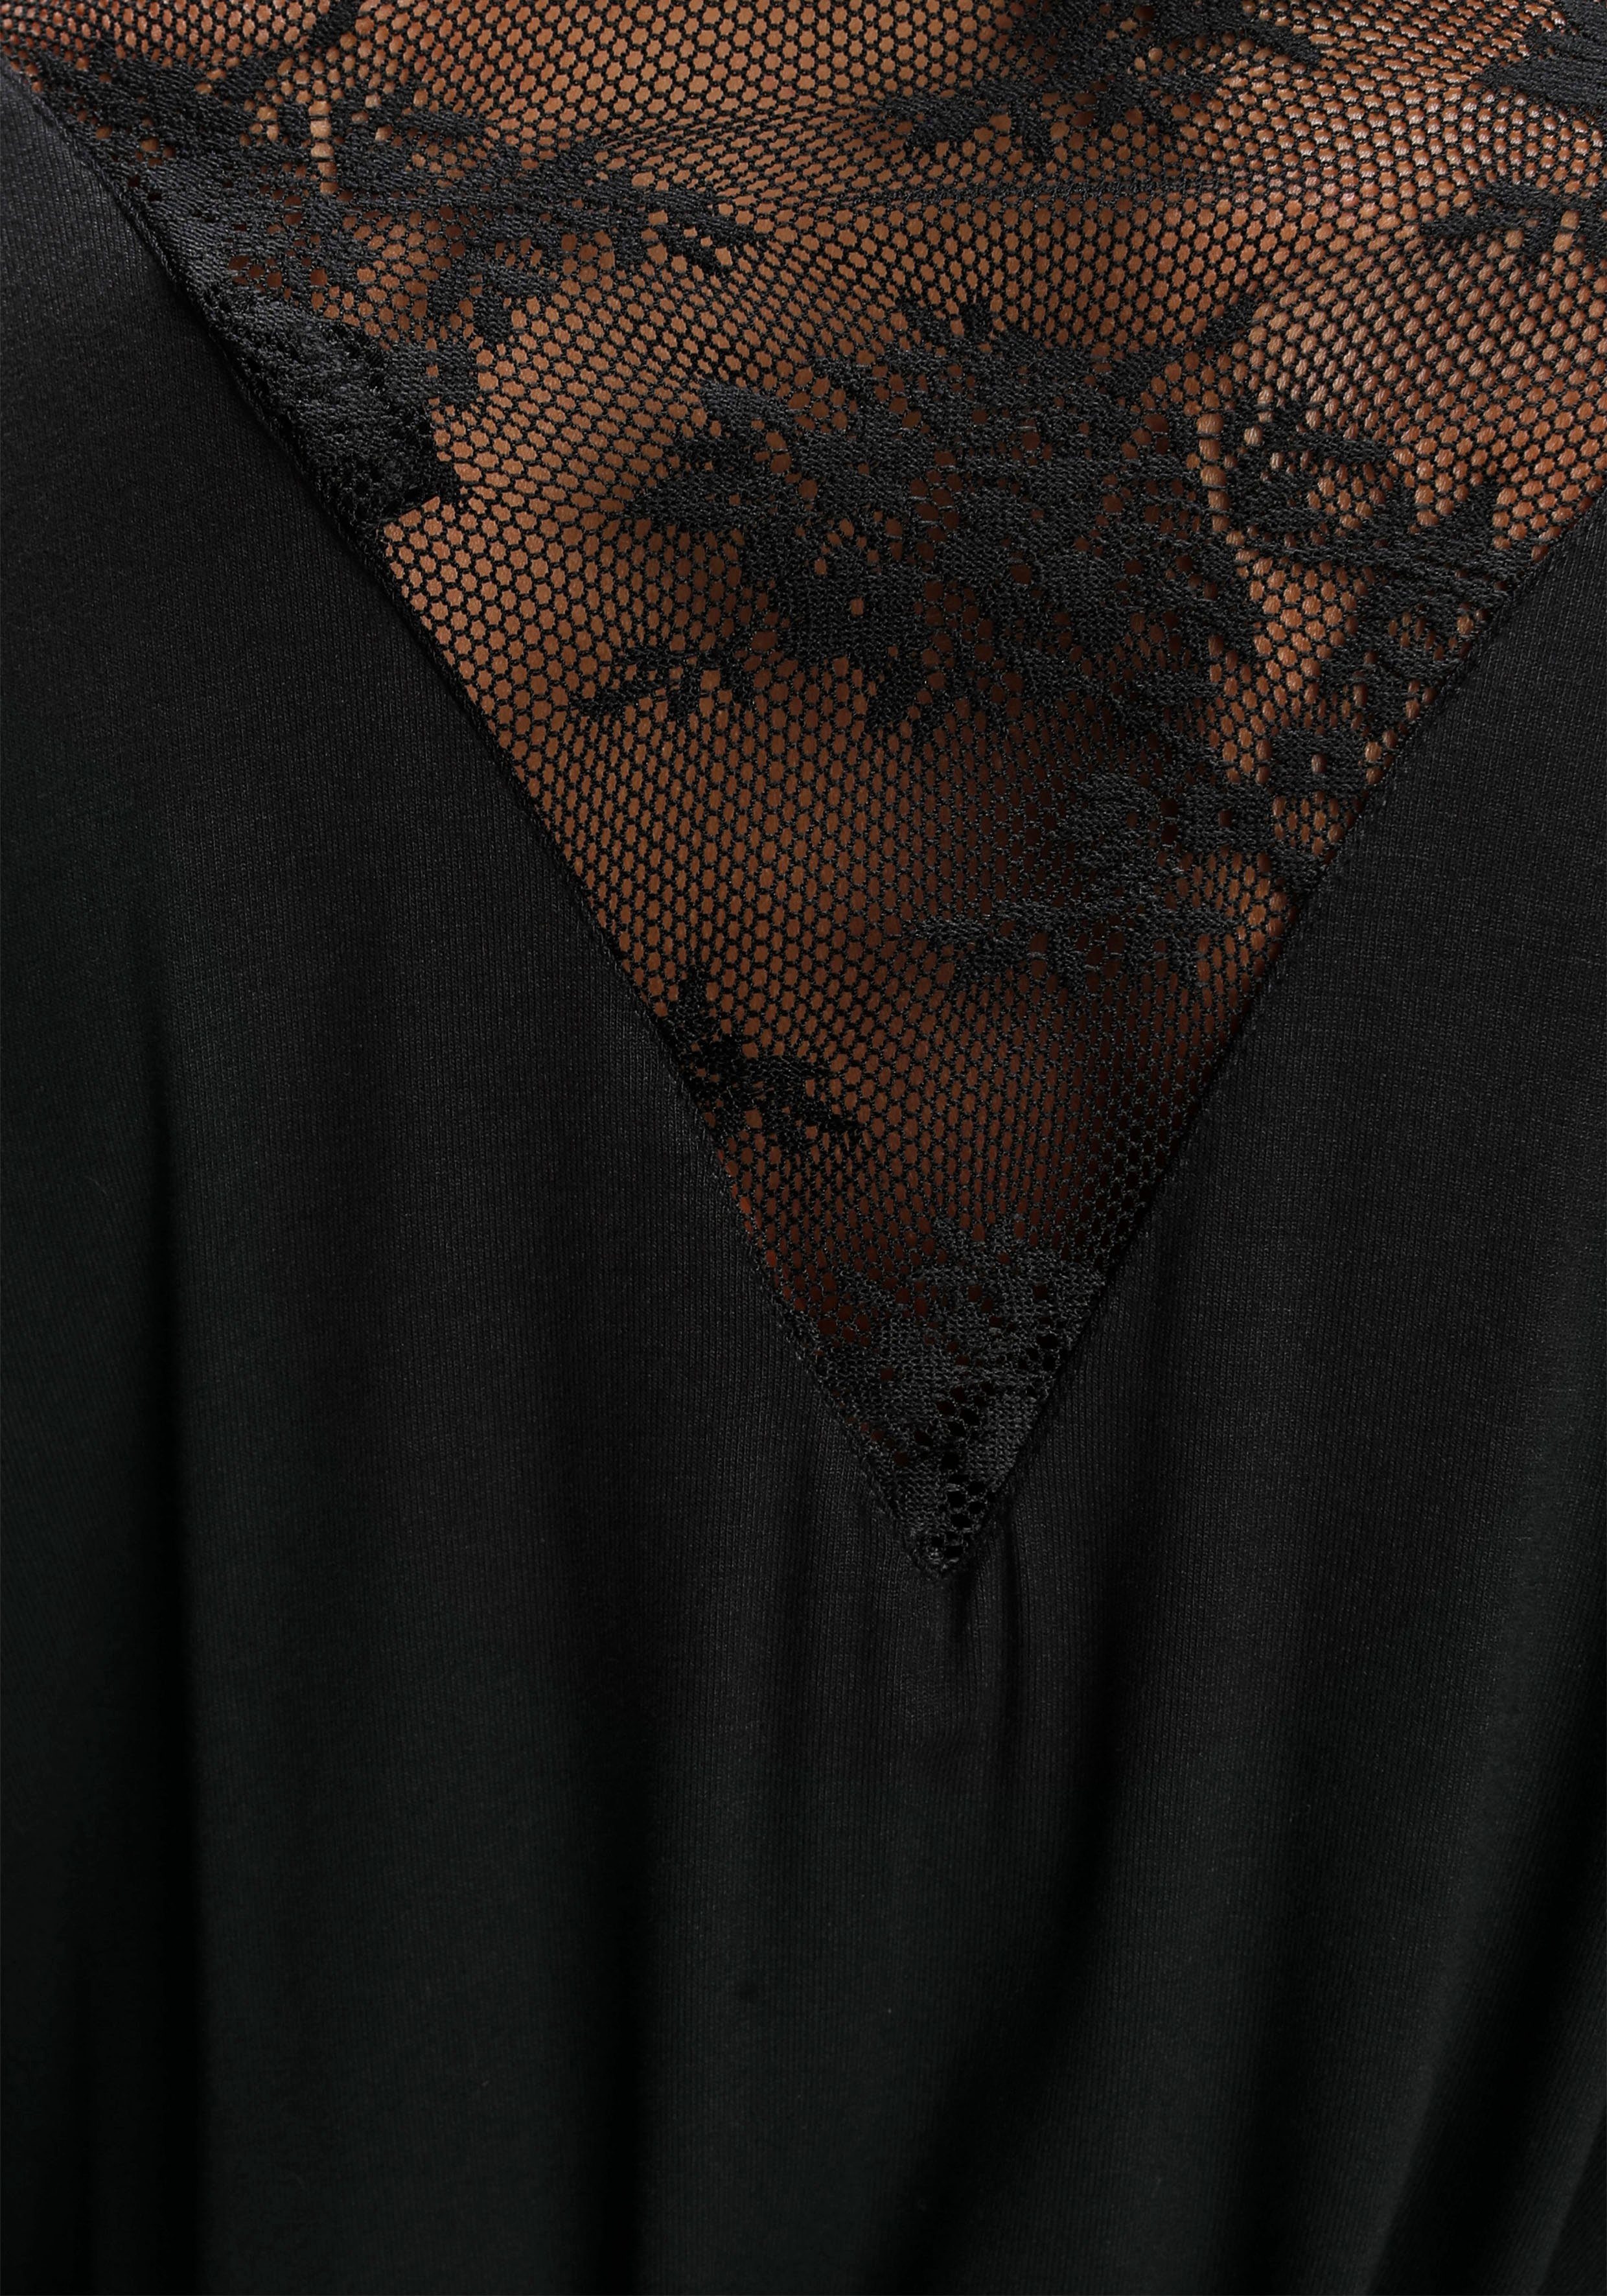 schwarz mit Kurzform, schönen Bruno Banani Spitzendetails Kimono, Viskose,